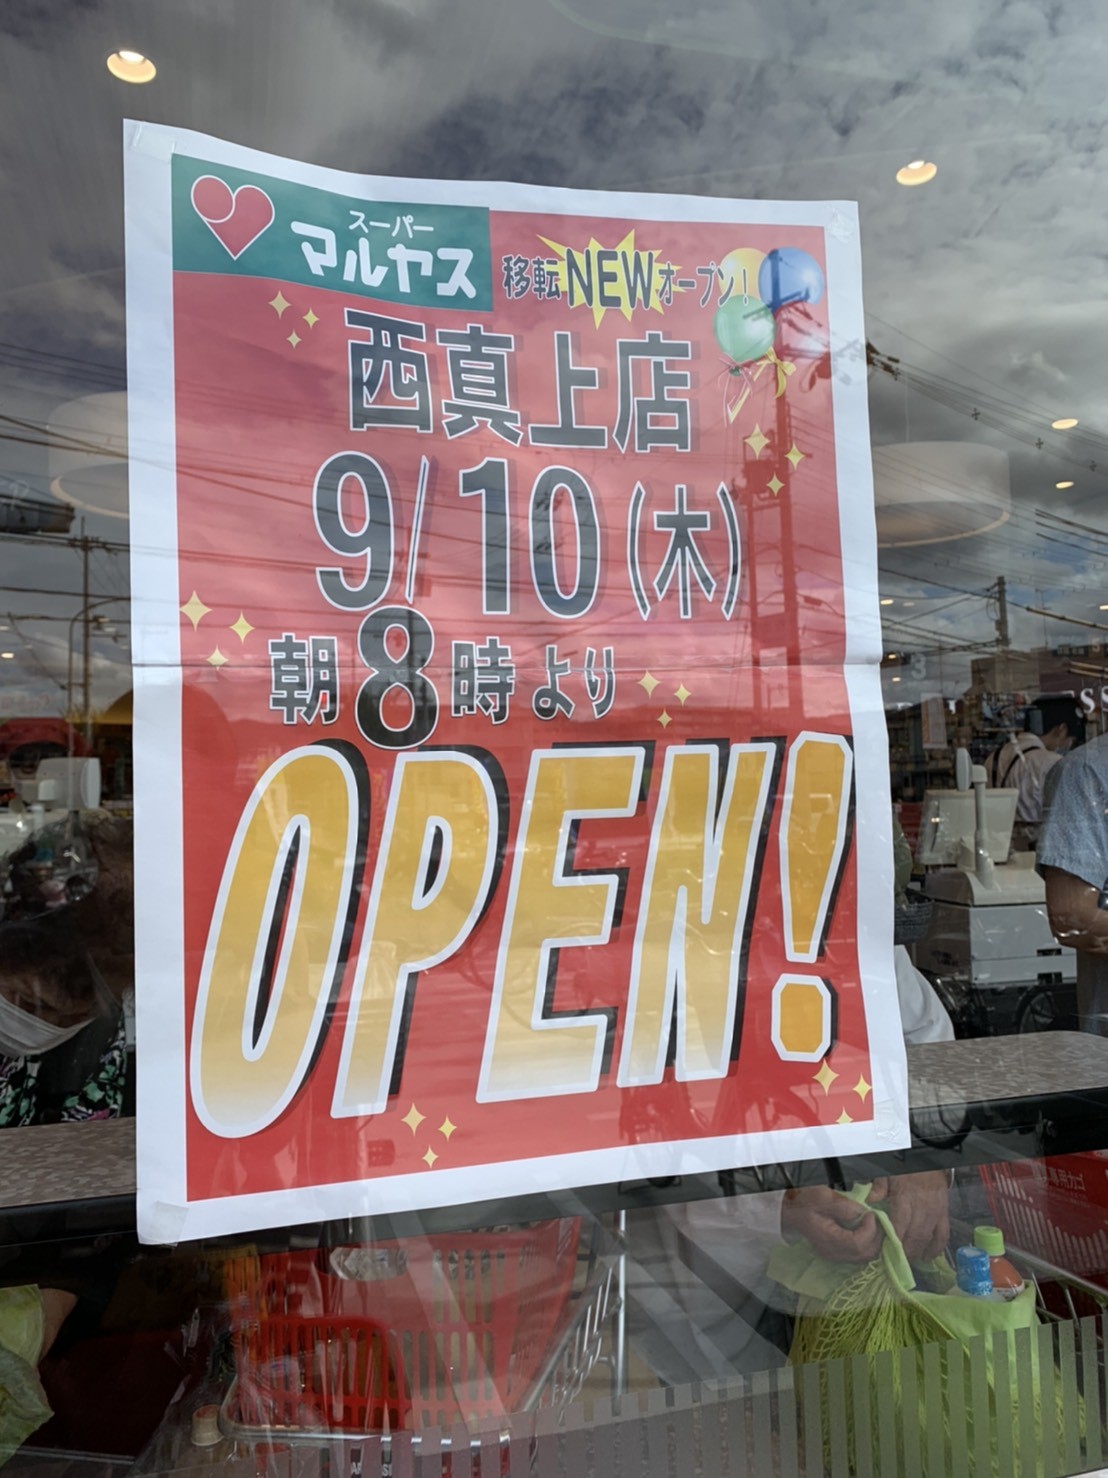 北大阪エリア情報 マルヤス西真上店が9月10日に移転オープン いいねいいねドットコム 地域スーパー情報サイト